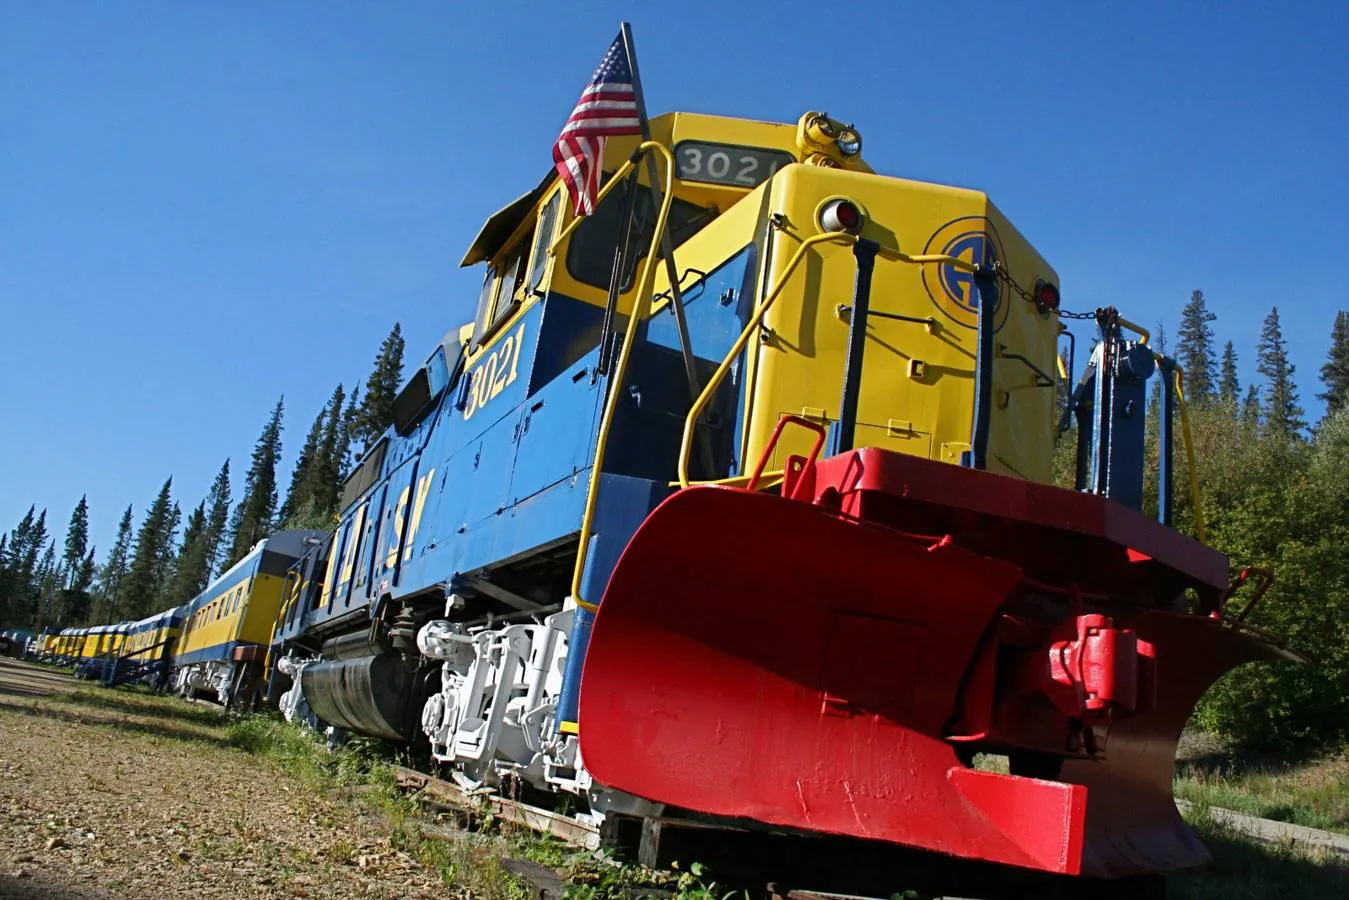 The Aurora Express. Un antiguo tren de pasajeros se ha reconvertido en hotel, sobre una vía muerta en el centro de Alaska.